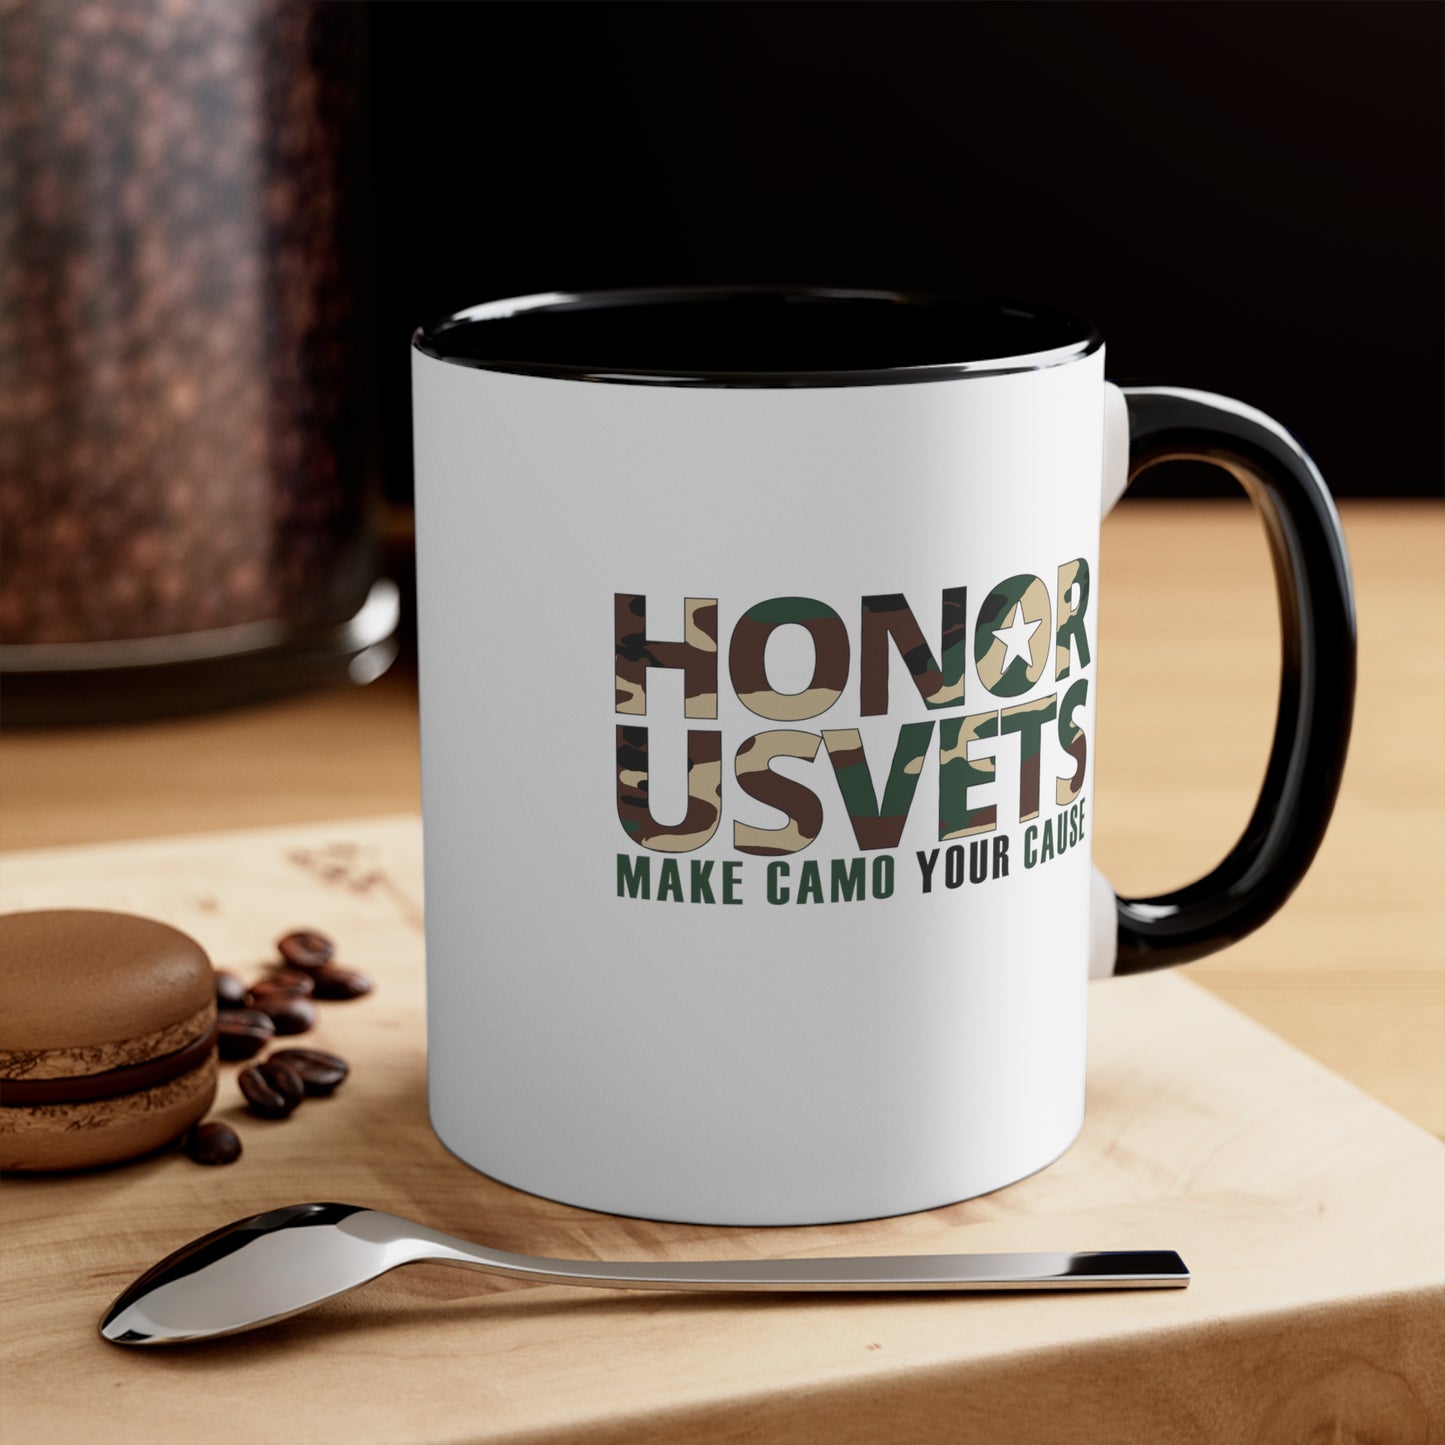 HONORUSVETS Accent Coffee Mug, 11oz